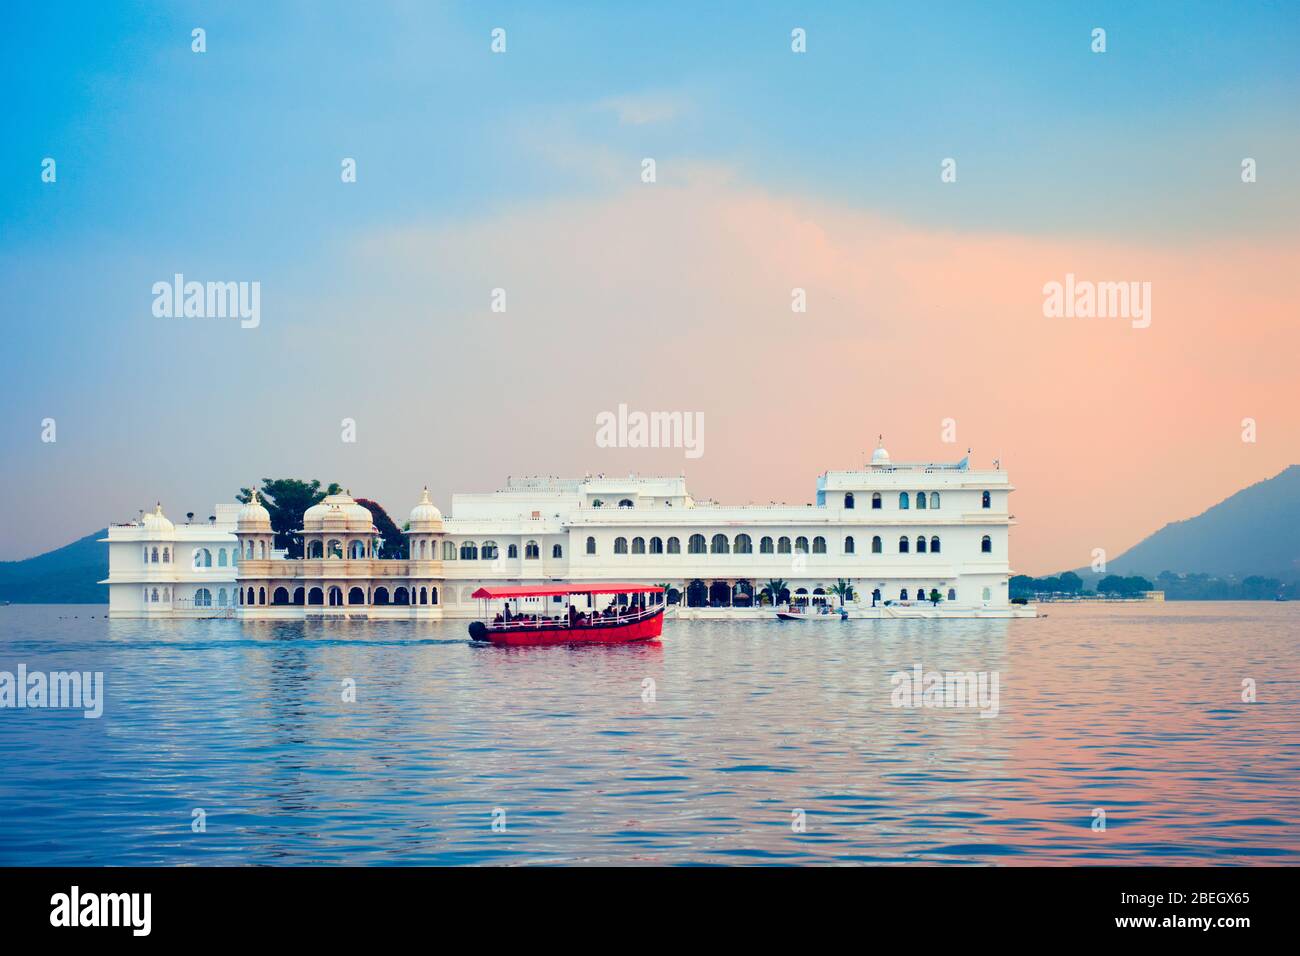 Lake Palace palace on Lake Pichola in twilight, Udaipur, Rajasthan, India Stock Photo